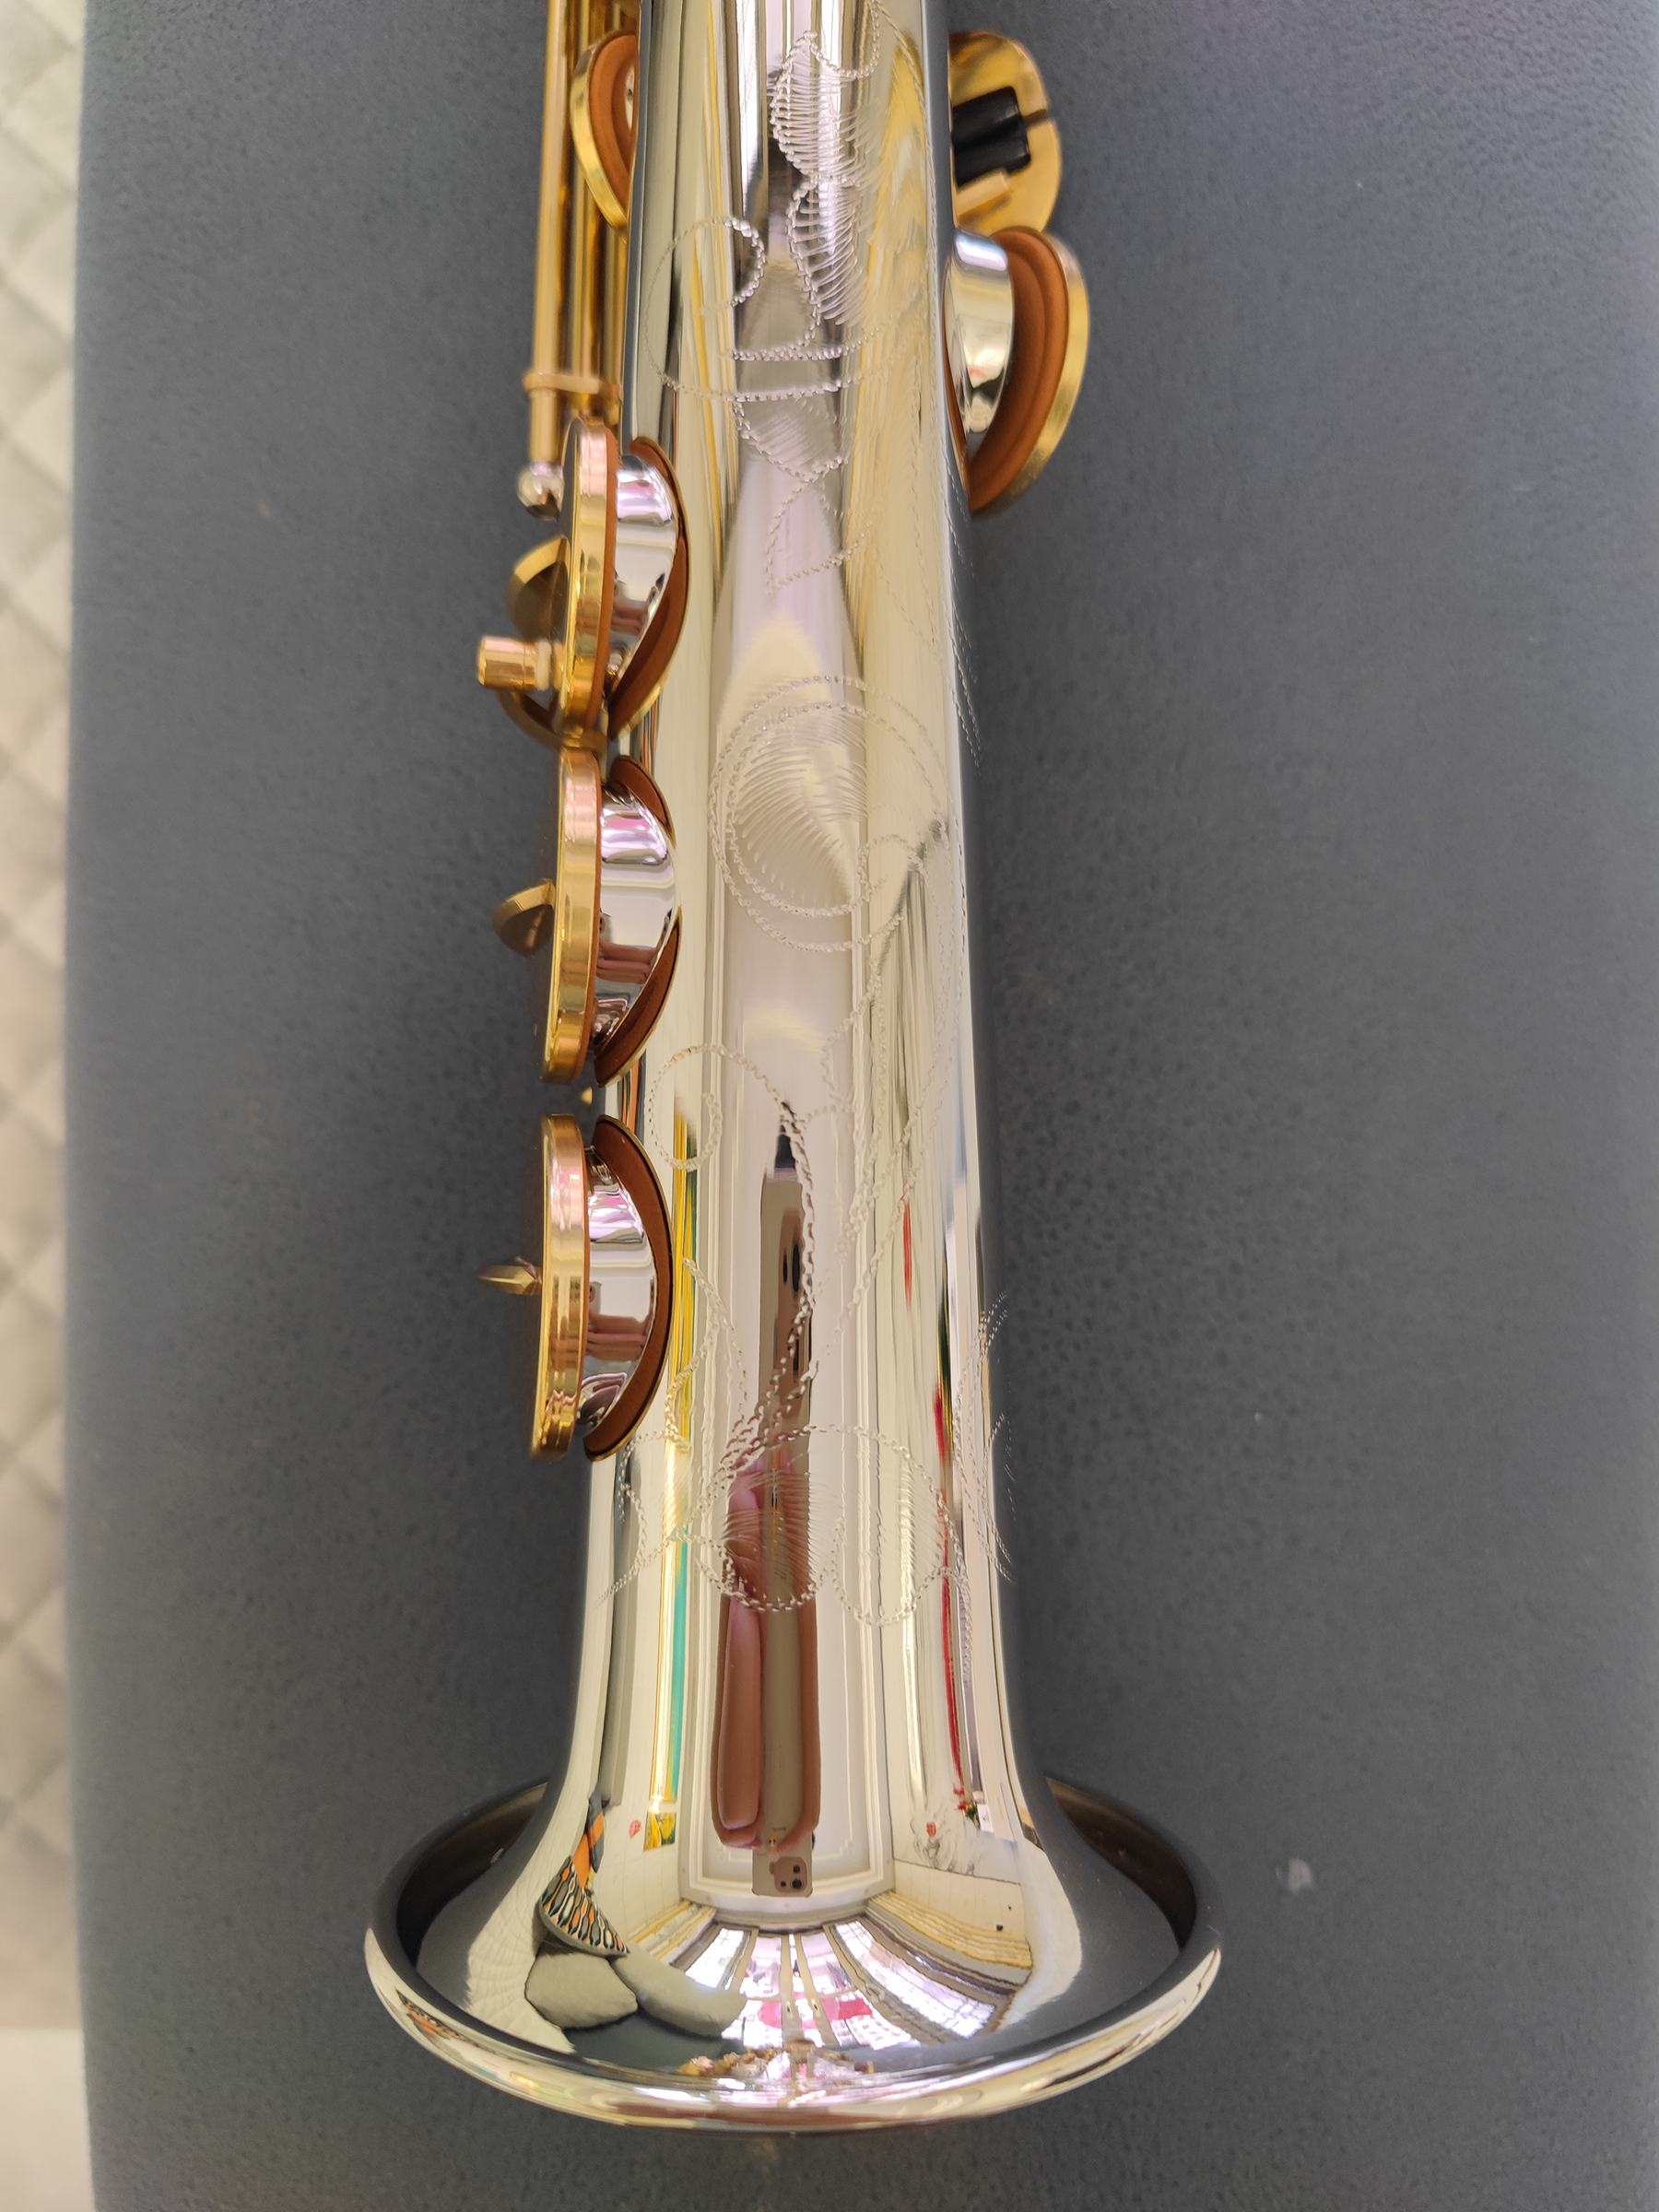 Original O37 estructura uno a uno modelo Bb saxofón profesional de tono alto cobre blanco chapado en oro instrumento de saxofón B-tune